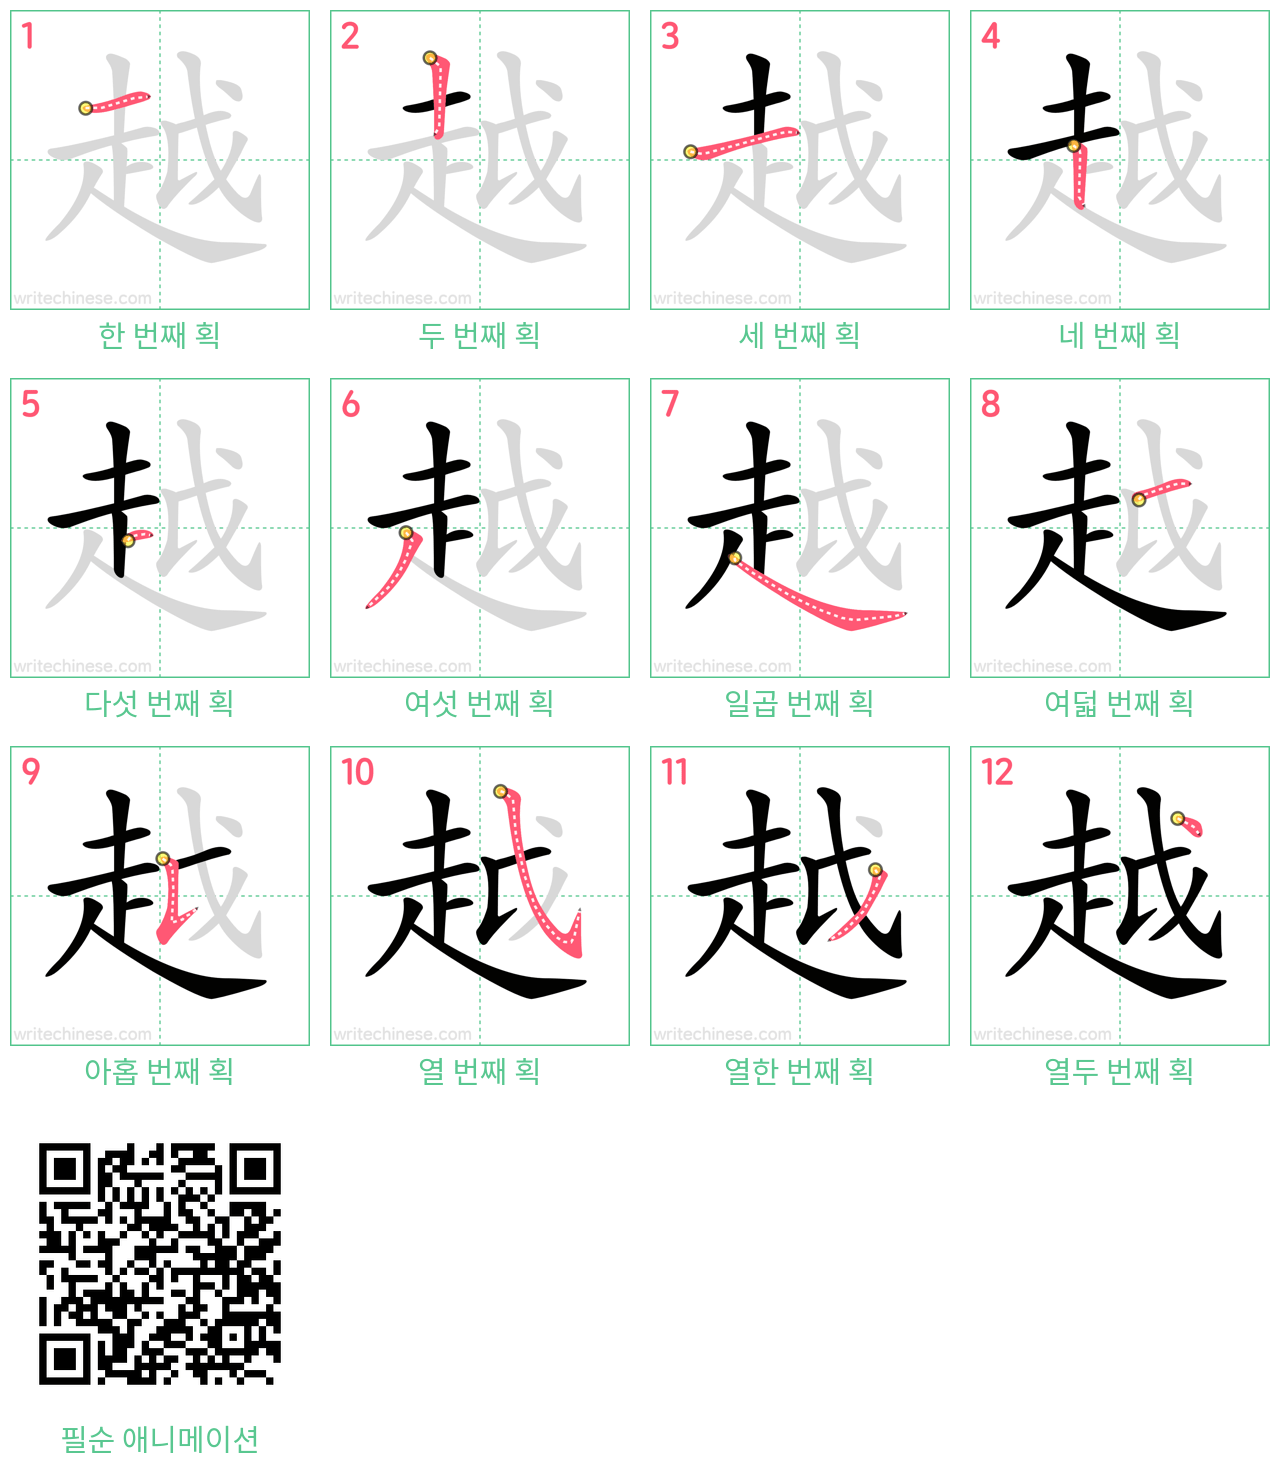 越 step-by-step stroke order diagrams